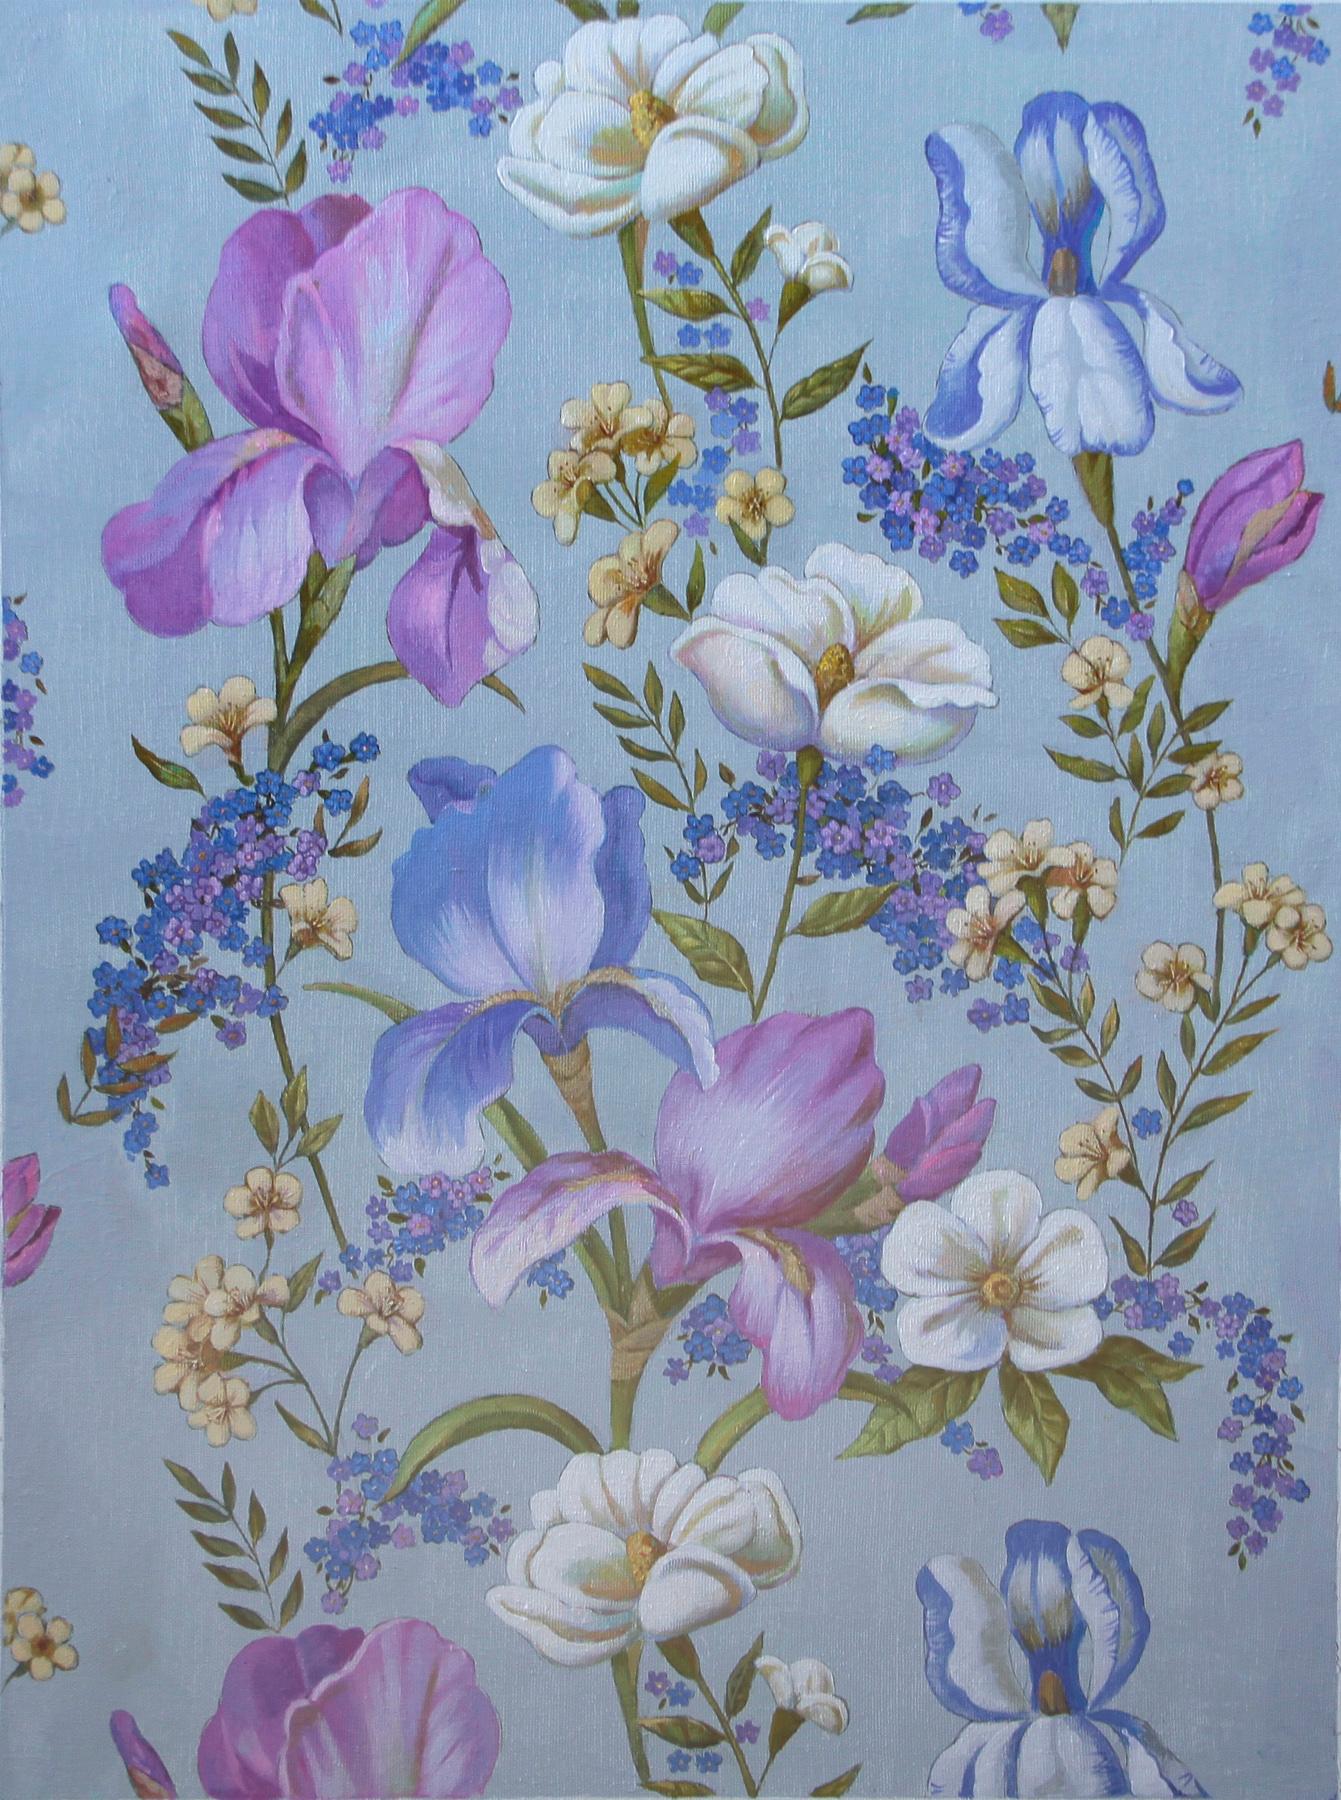 Decorative panel with irises